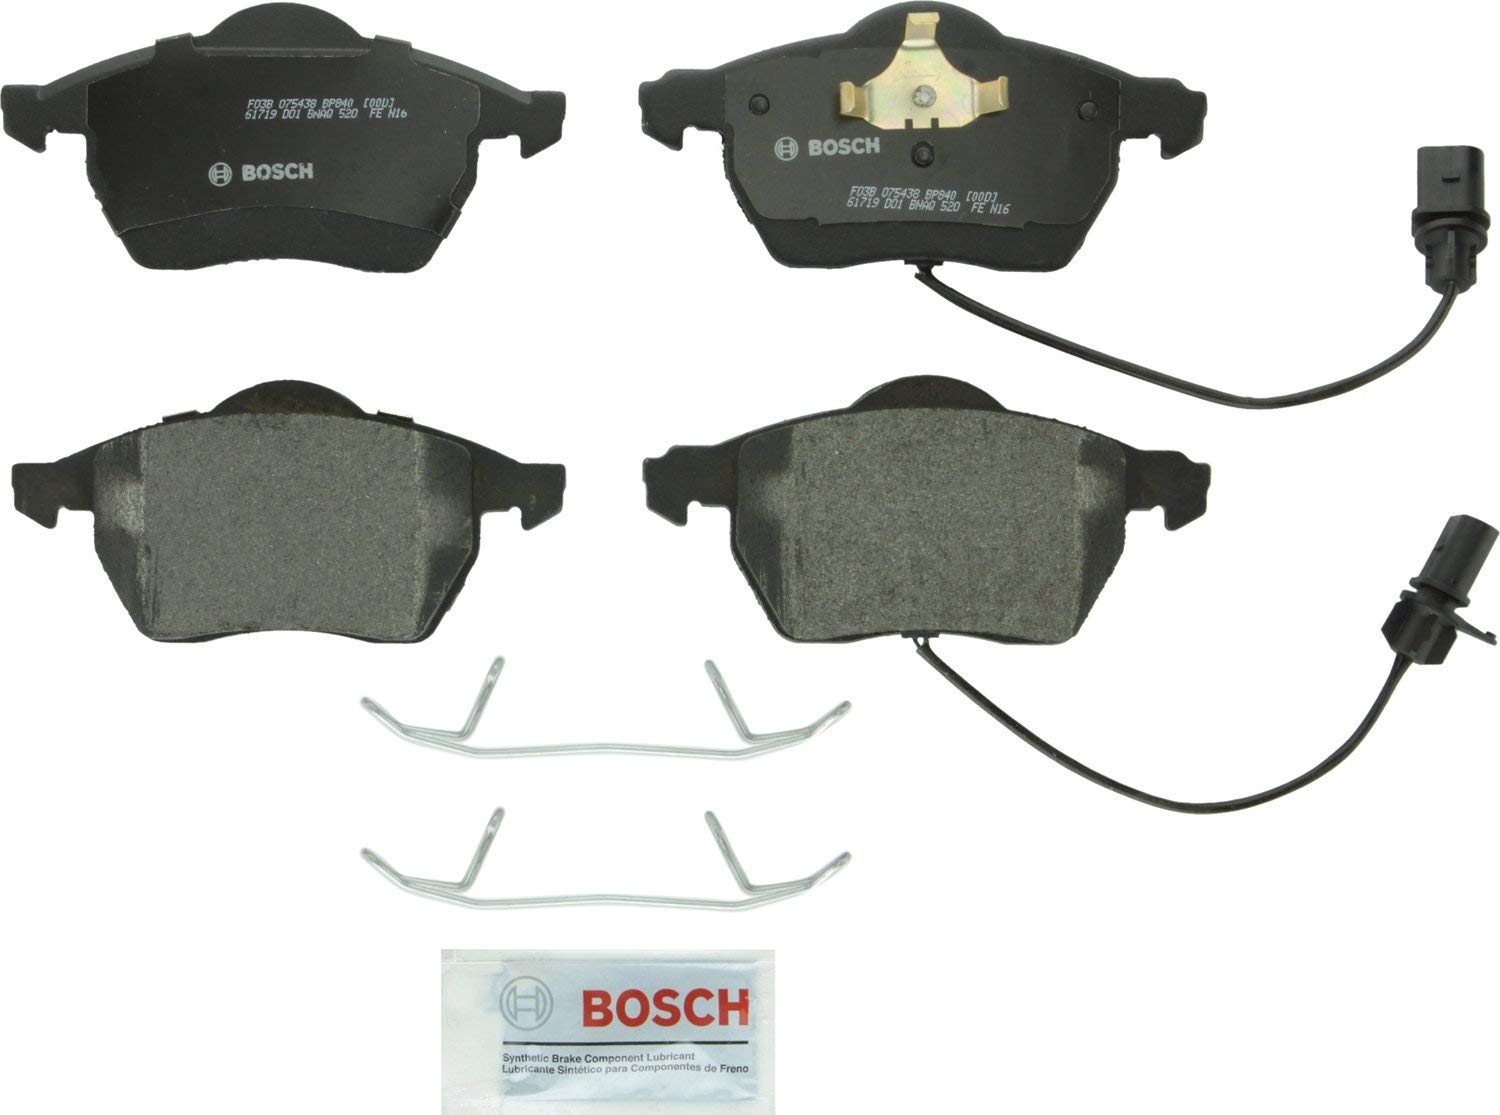 Bosch BP840 QuietCast Premium Semi-Metallic Disc Brake Pad Set For: Audi A4, A4 Quattro, A6, A6 Quattro; Saab 9-5; Volkswagen Passat, Front